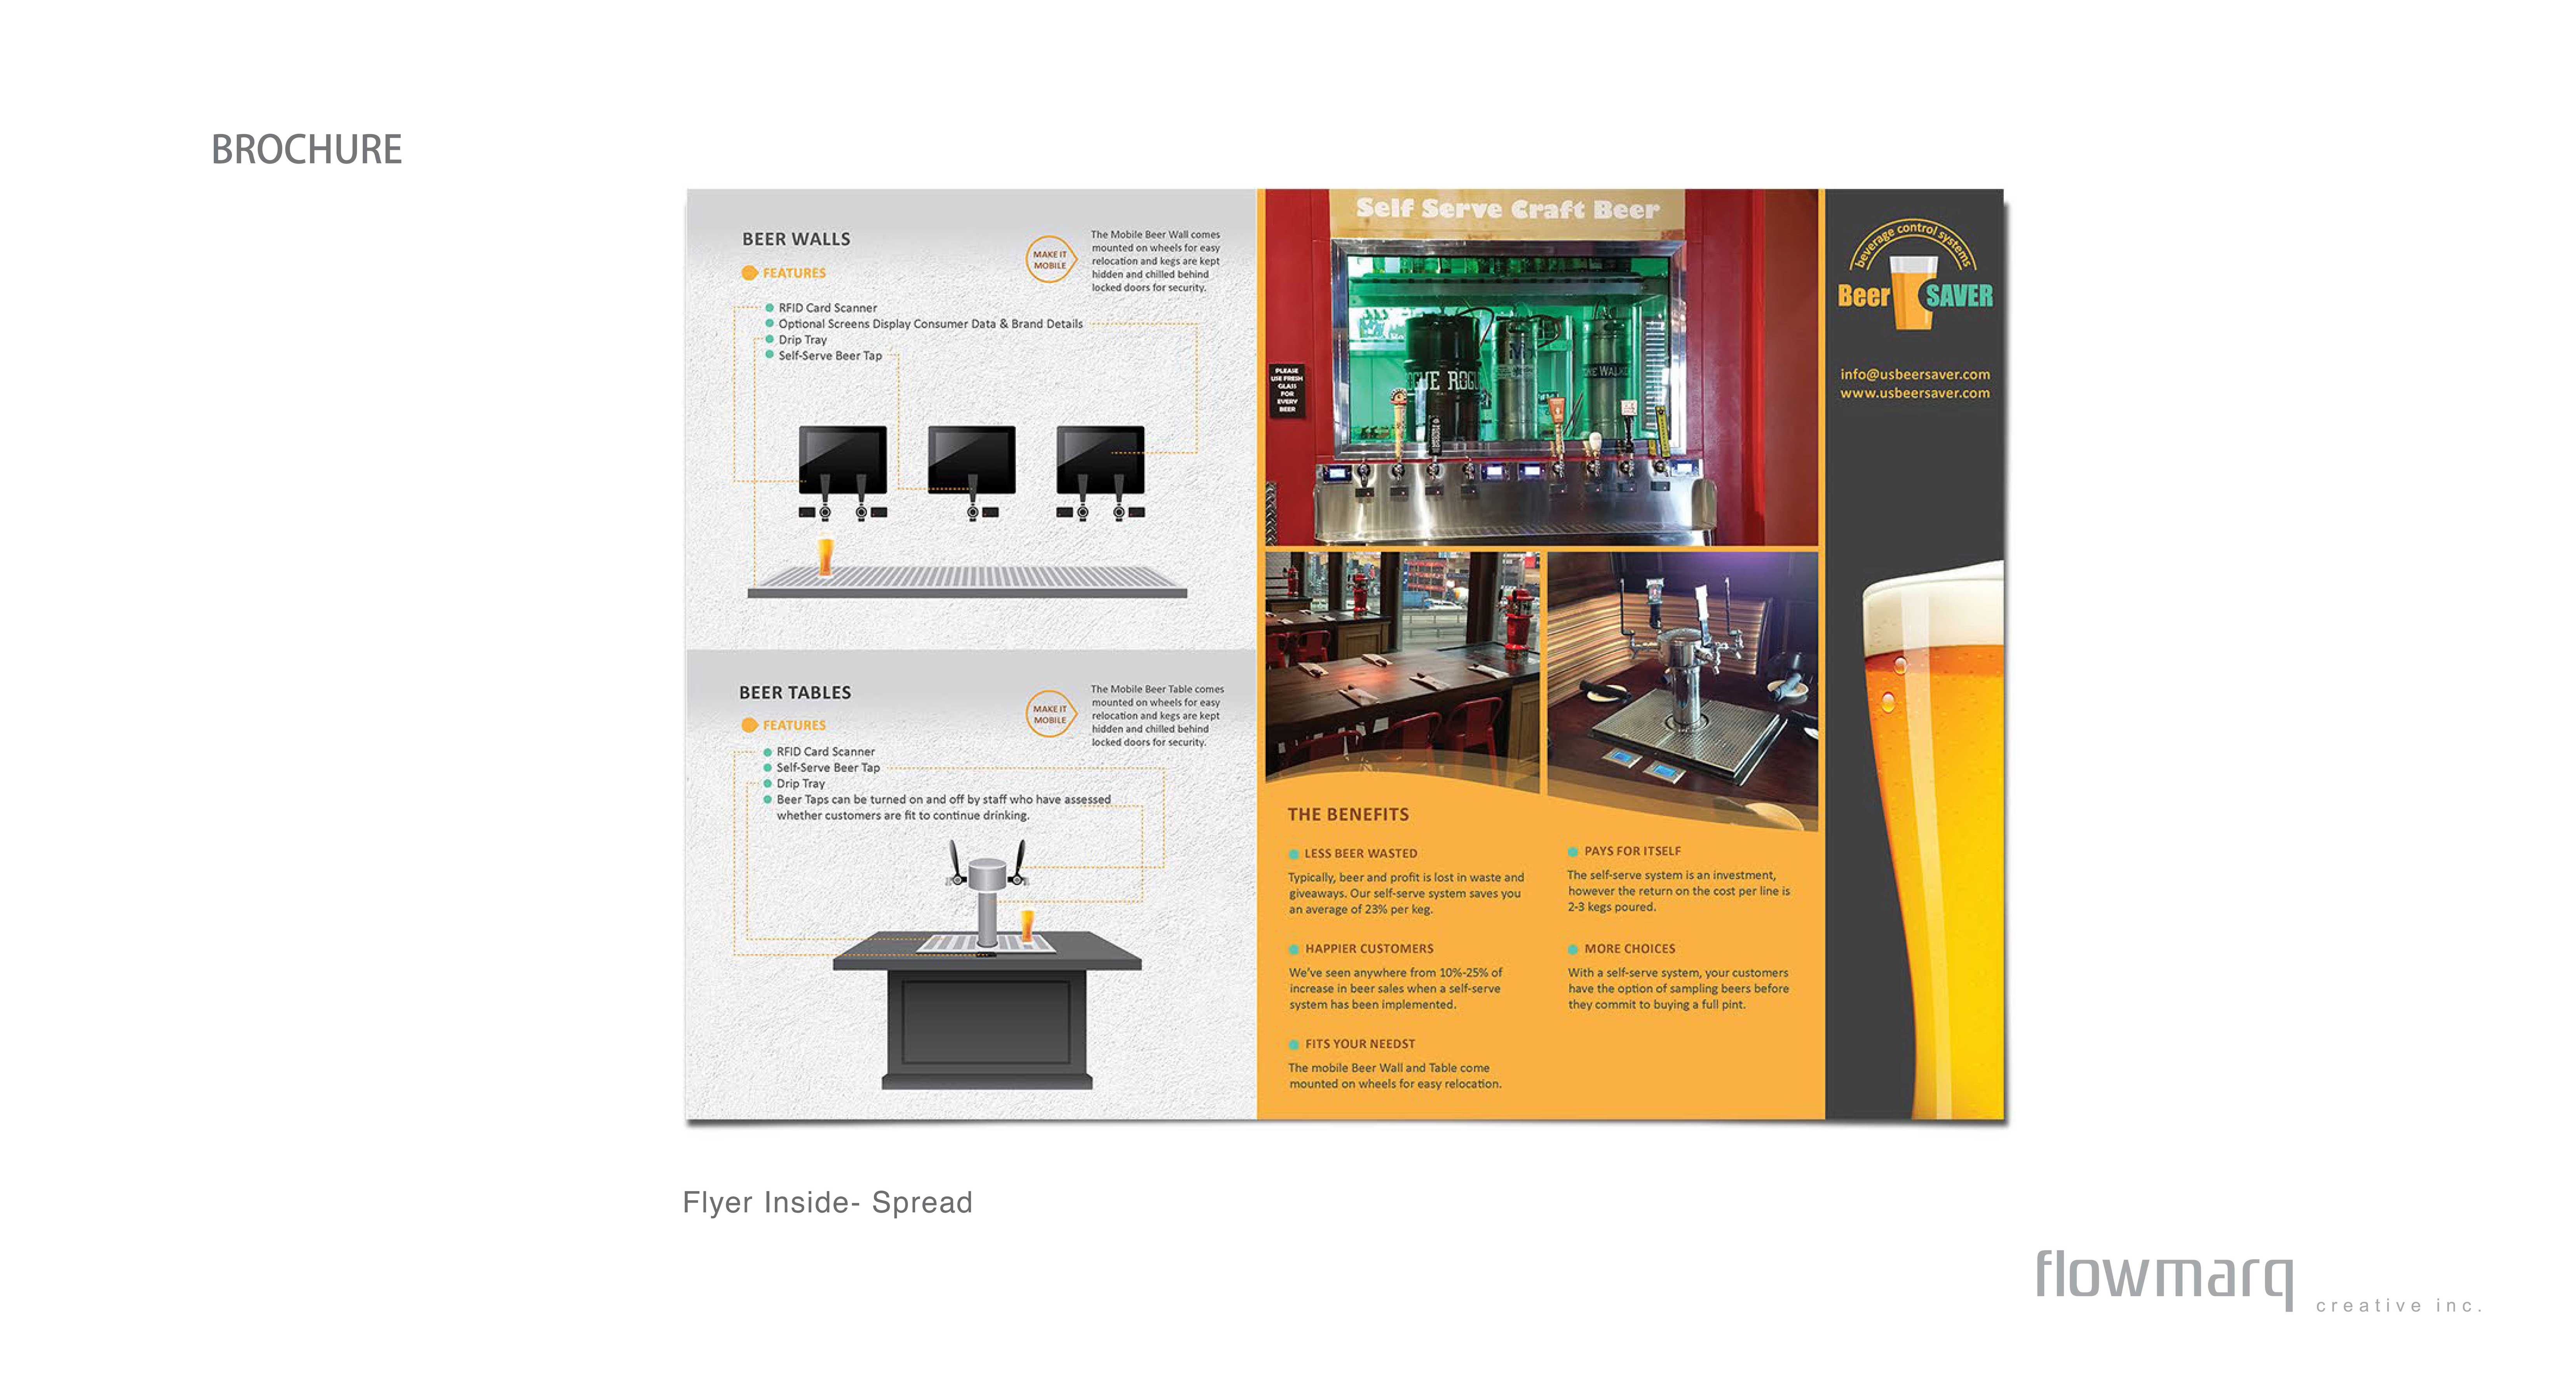 BeerSAVER Flyer Design - Interaction Design